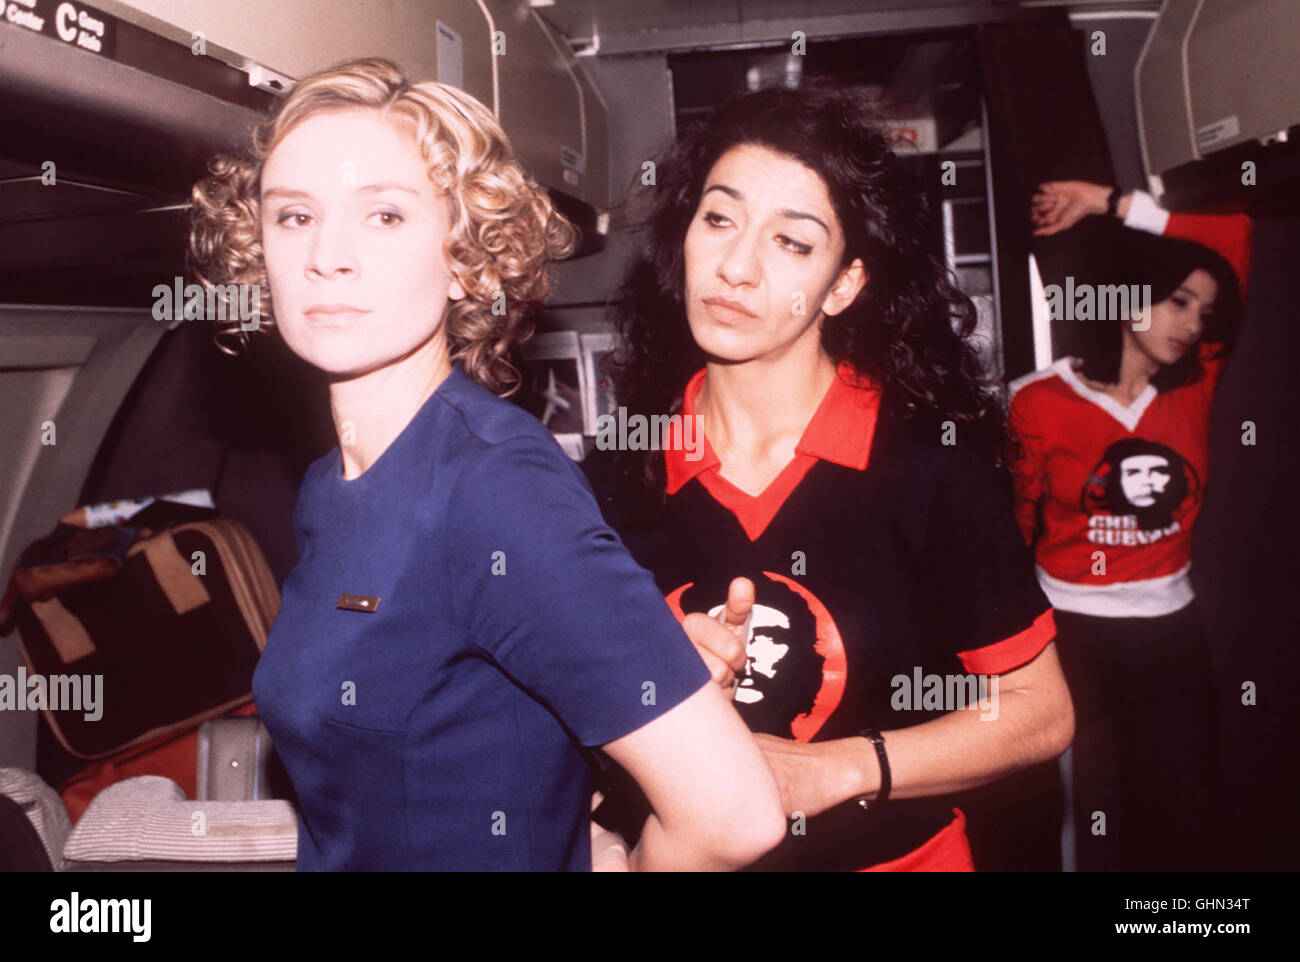 Fernsehfilm über die RAF-Geiselnahme des Arbeit-geberpräsidenten Hanns Martin Schleyer am 5.September 1977 und die Entführung der Lufthansa-maschine 'Landshut' am 13.Oktober durch ein palästi- nensisches Terror-kommando. Bild: Stewardess Gaby Dillmann (SUSANNE SCHÄFER) wird von der Entführerin Souheila Andrawes (NEZUKET SELBUS) gefesselt. Hinten: die Entführerin Nadia (ISABELLA PARKINSON). Regie: Heinrich Breloer aka. Entführt die 'Landshut' Stock Photo